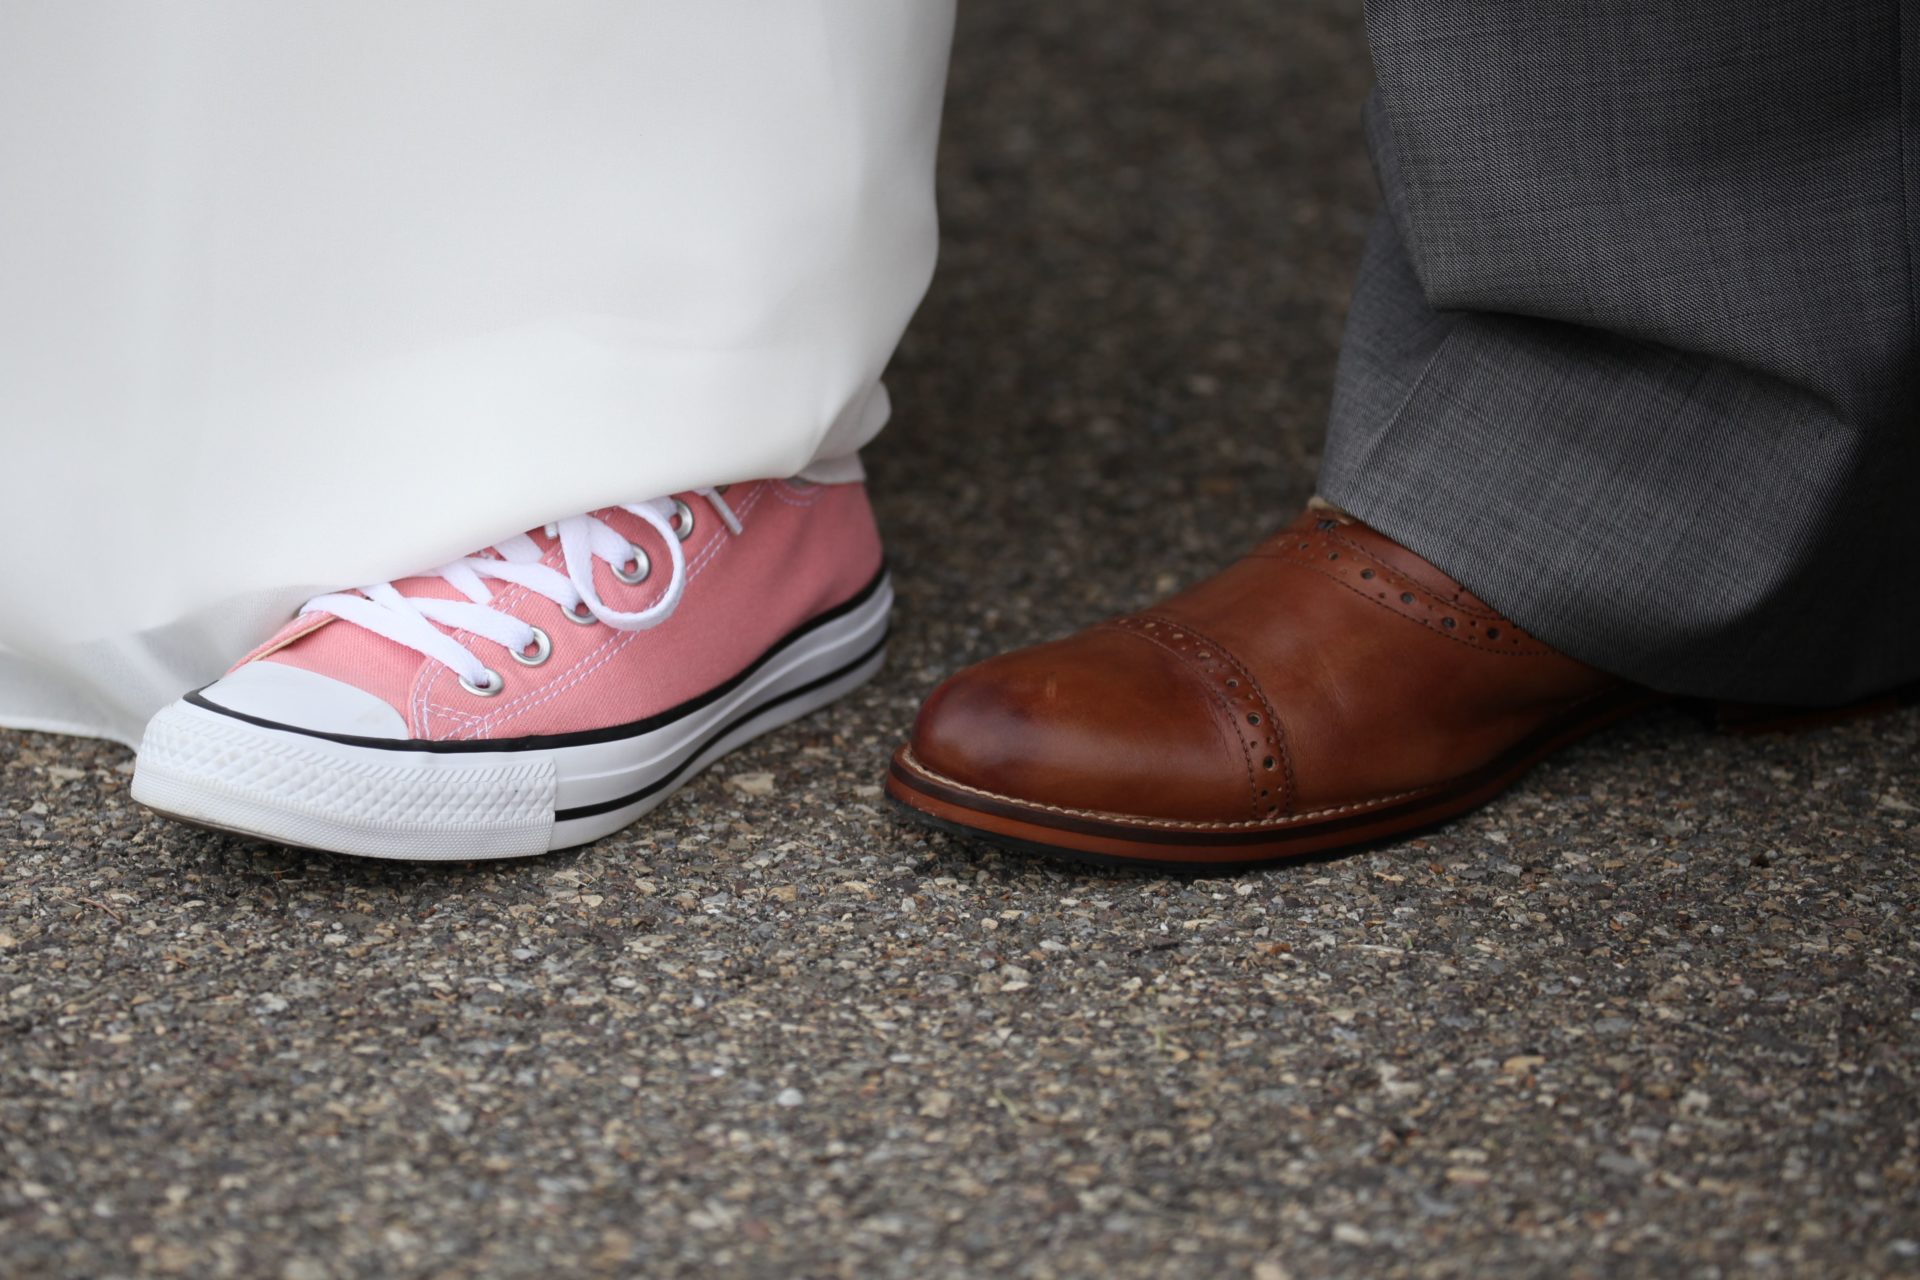 Bride pink sneakers at wedding